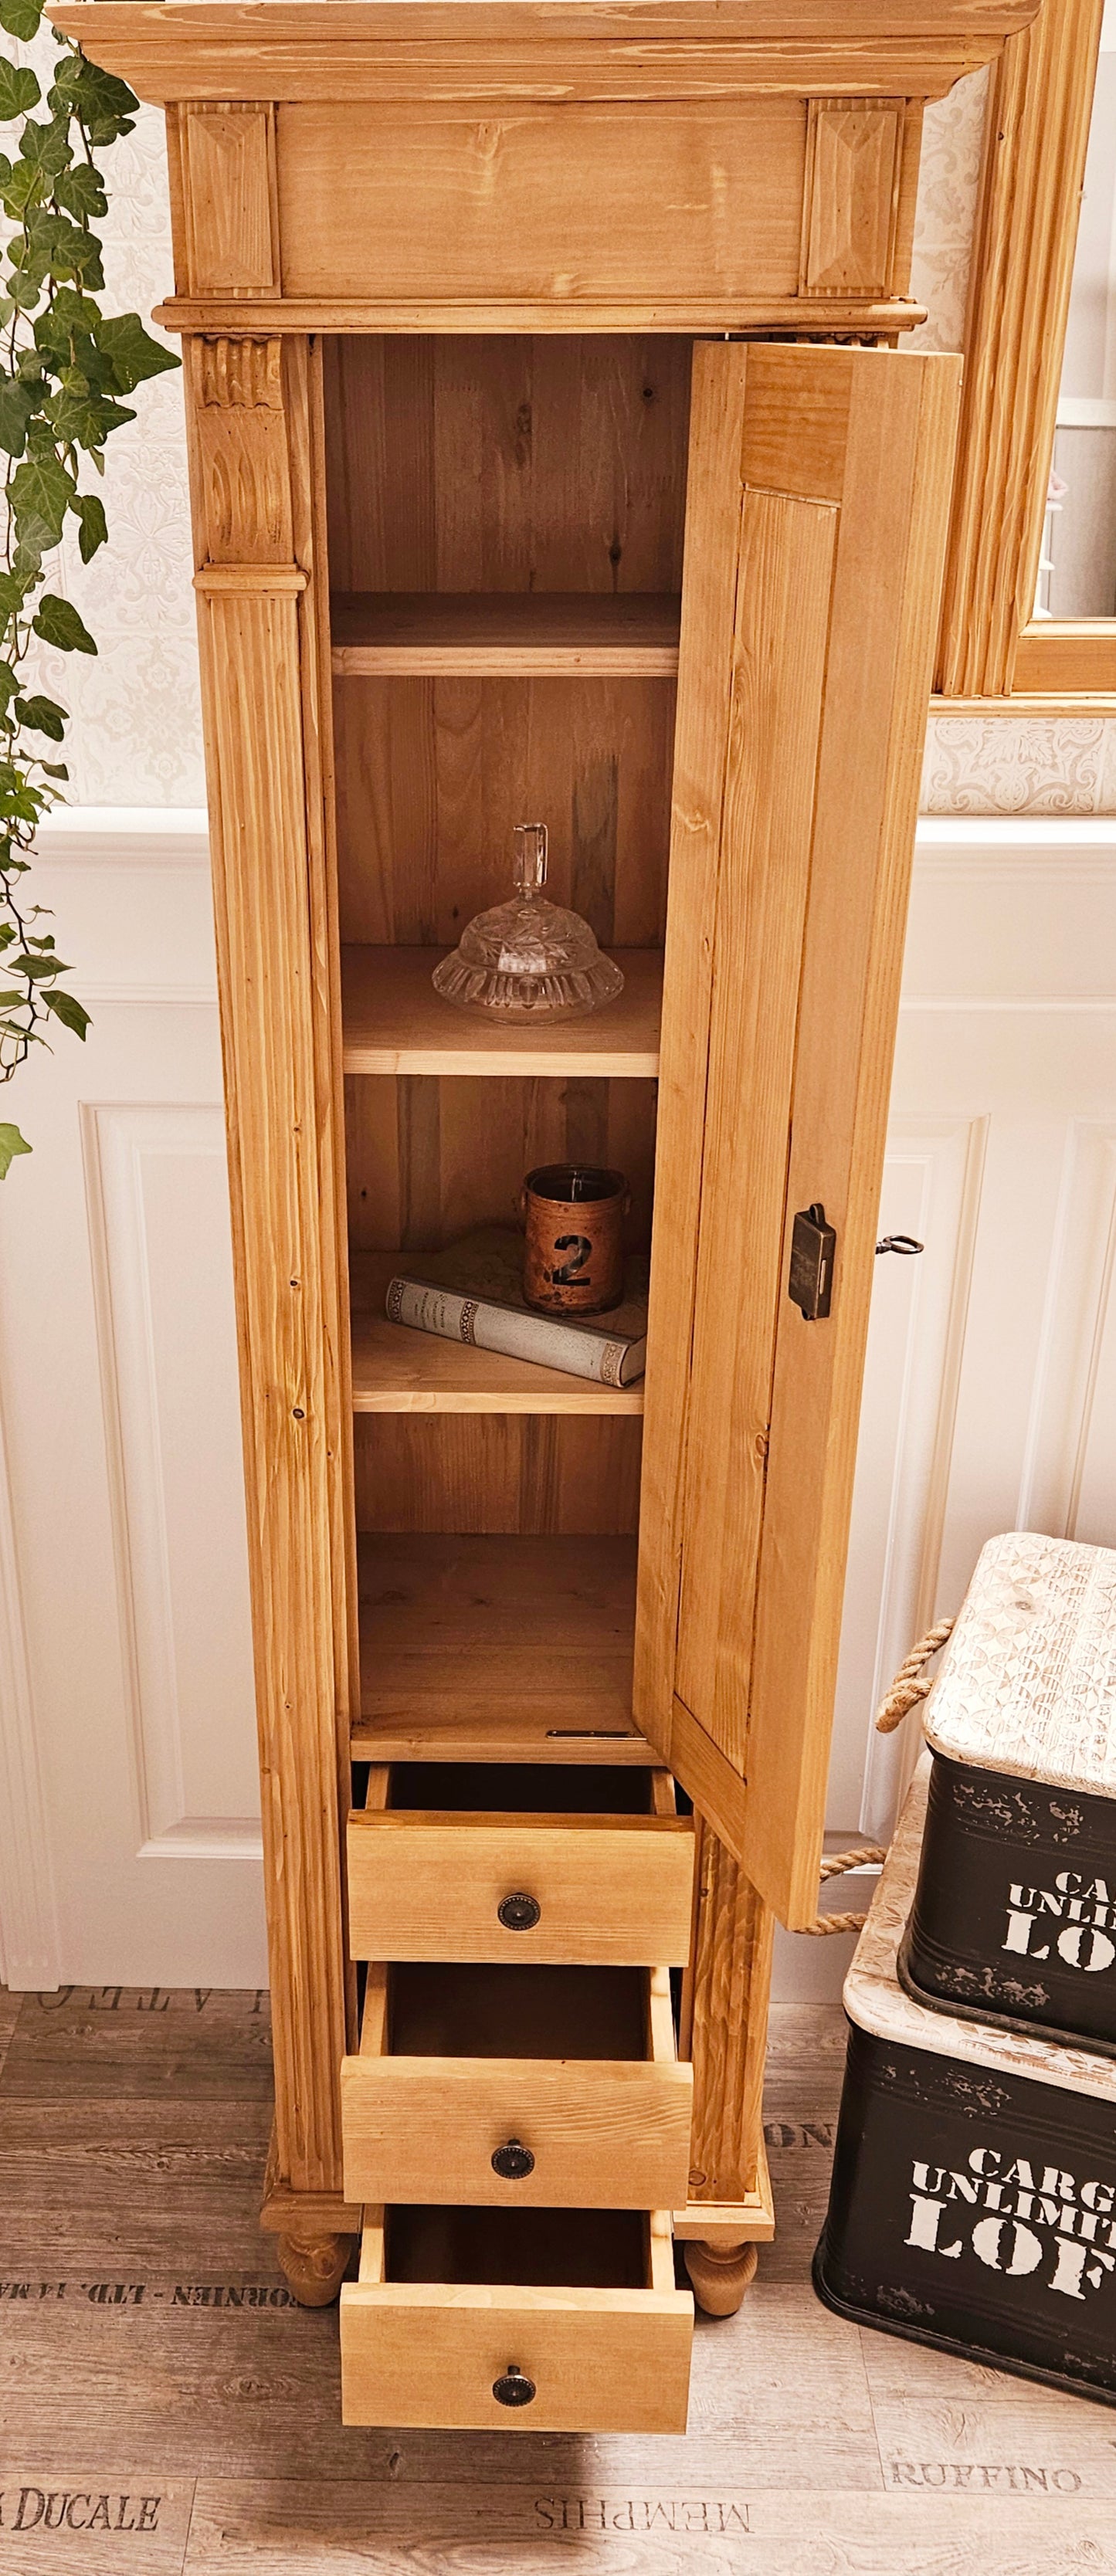 Lillesand - Petite armoire haute dans le style de l'époque de la fondation, meubles de campagne en bois massif naturel